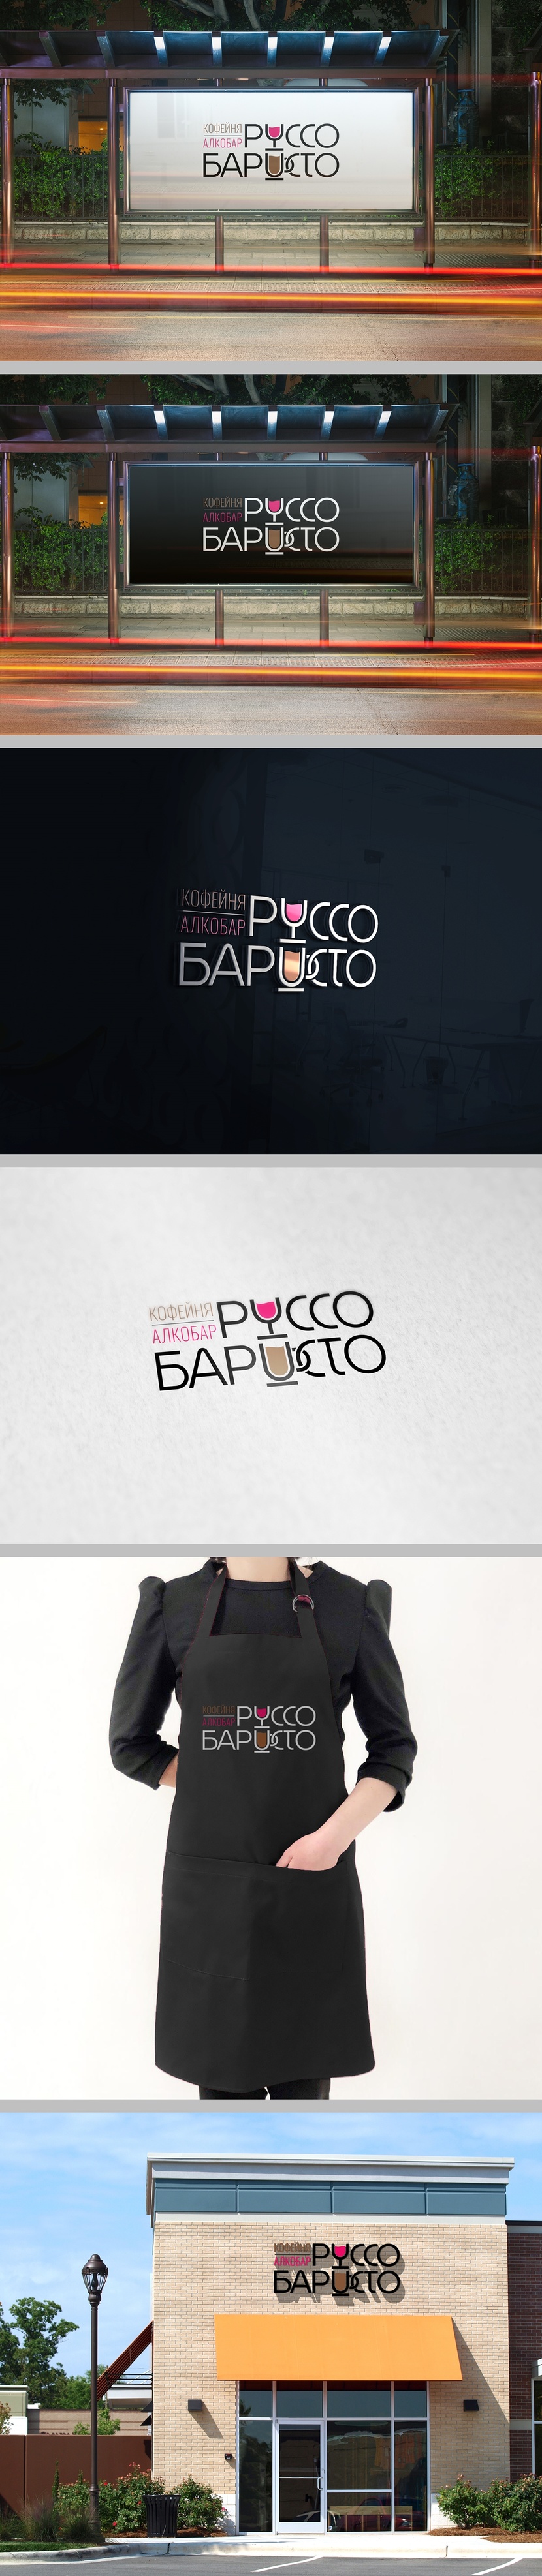 Внес правки в вариант с ручкой - Создание логотипа для Кофейни - алкобара "Руссо баристо"